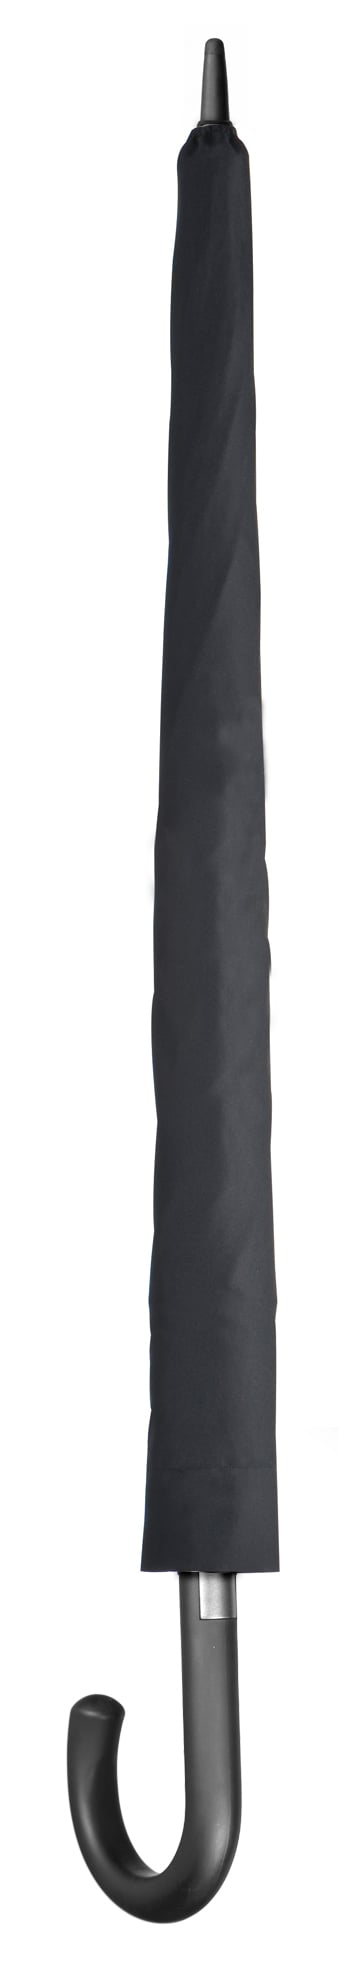 Зонт Bergamo, с карбоновым держателем, черный (2143103) - фото 2